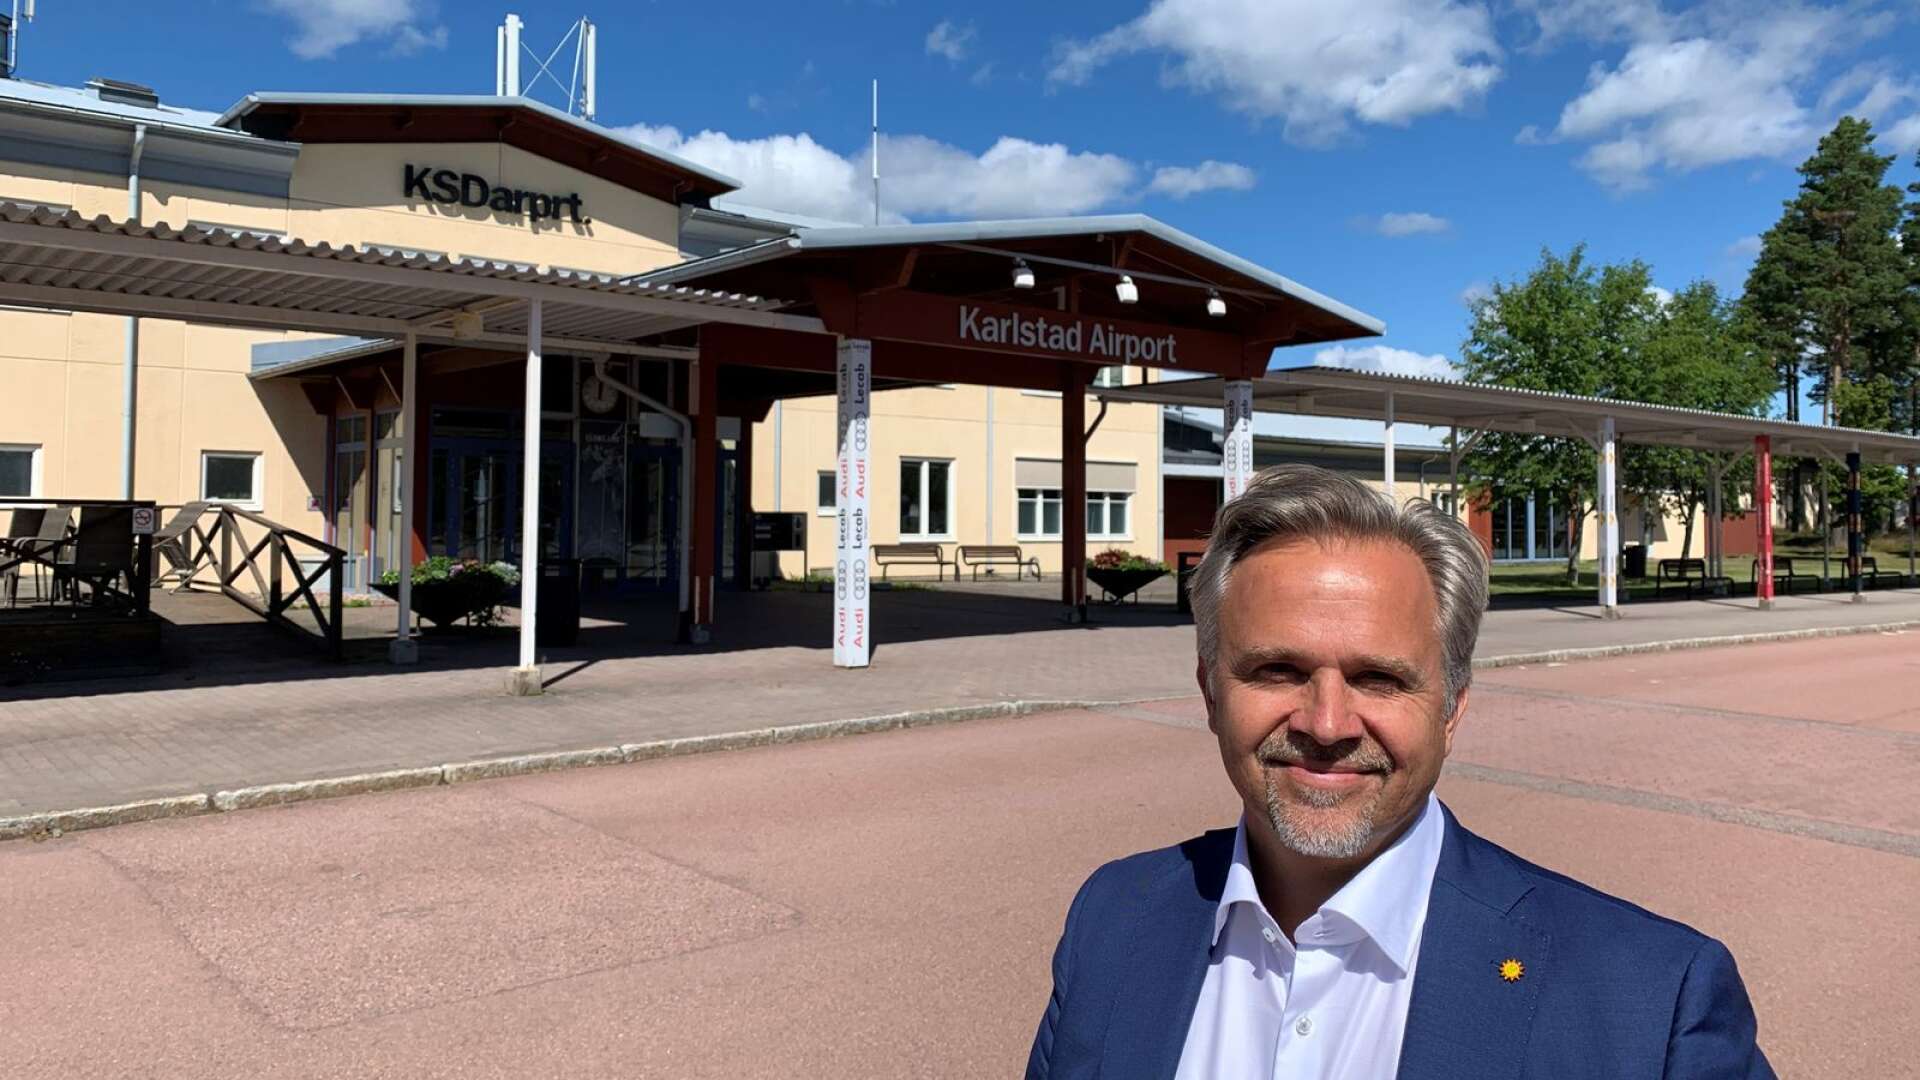 Värmlands näringsliv och besöksnäring behöver flyget för att nå marknader och besökare, den värmländska sjukvården behöver ambulansflyget, och brandförsvaret möjlighet till brandflyg, skriver Niklas Wikström.